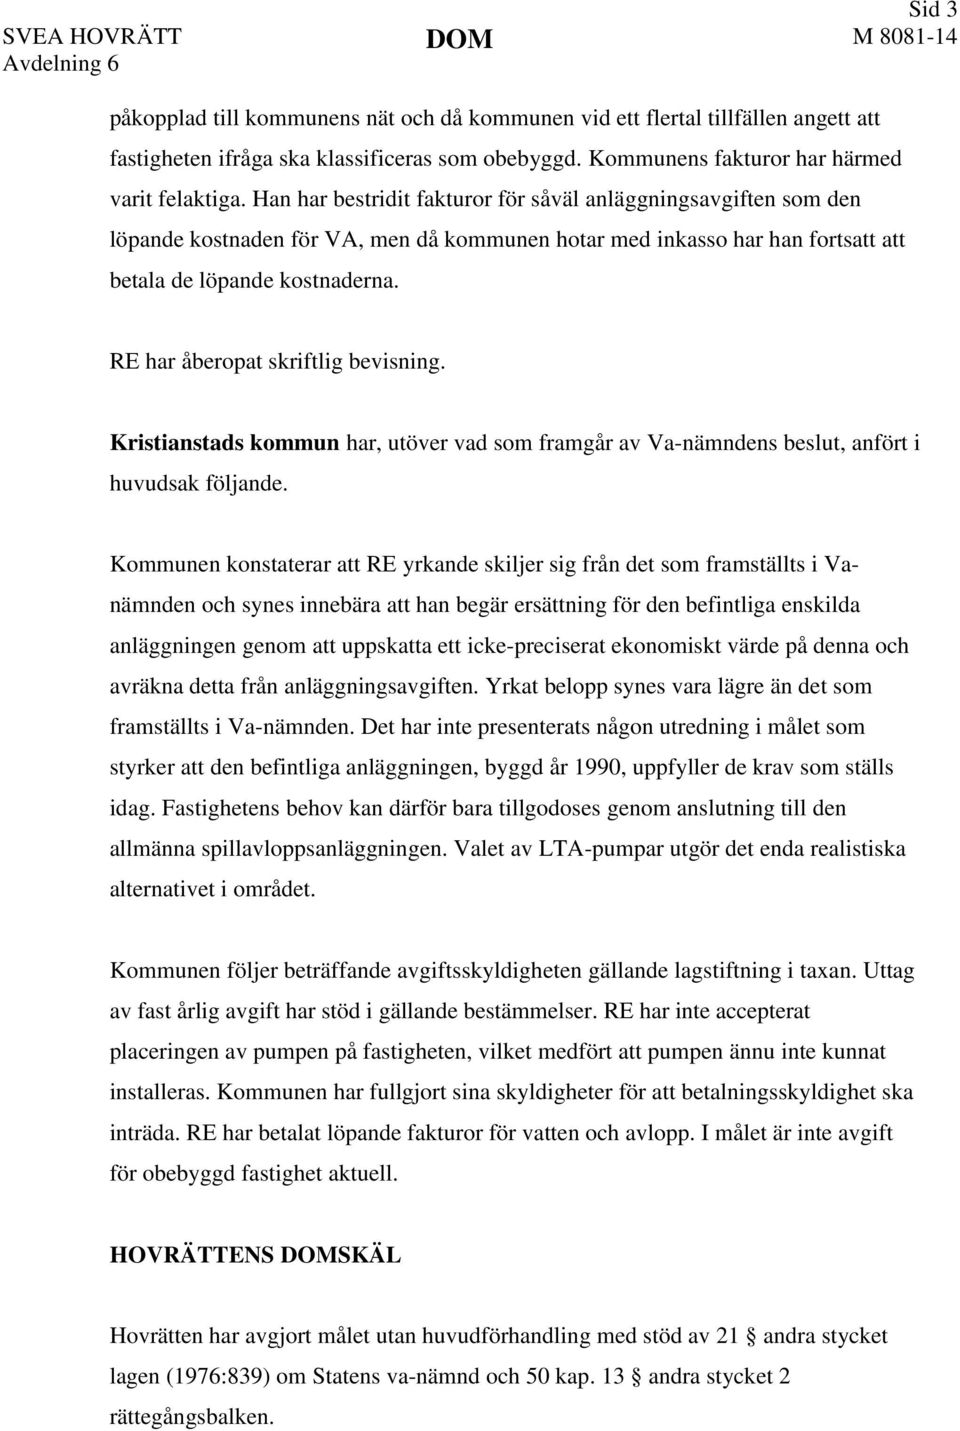 RE har åberopat skriftlig bevisning. Kristianstads kommun har, utöver vad som framgår av Va-nämndens beslut, anfört i huvudsak följande.